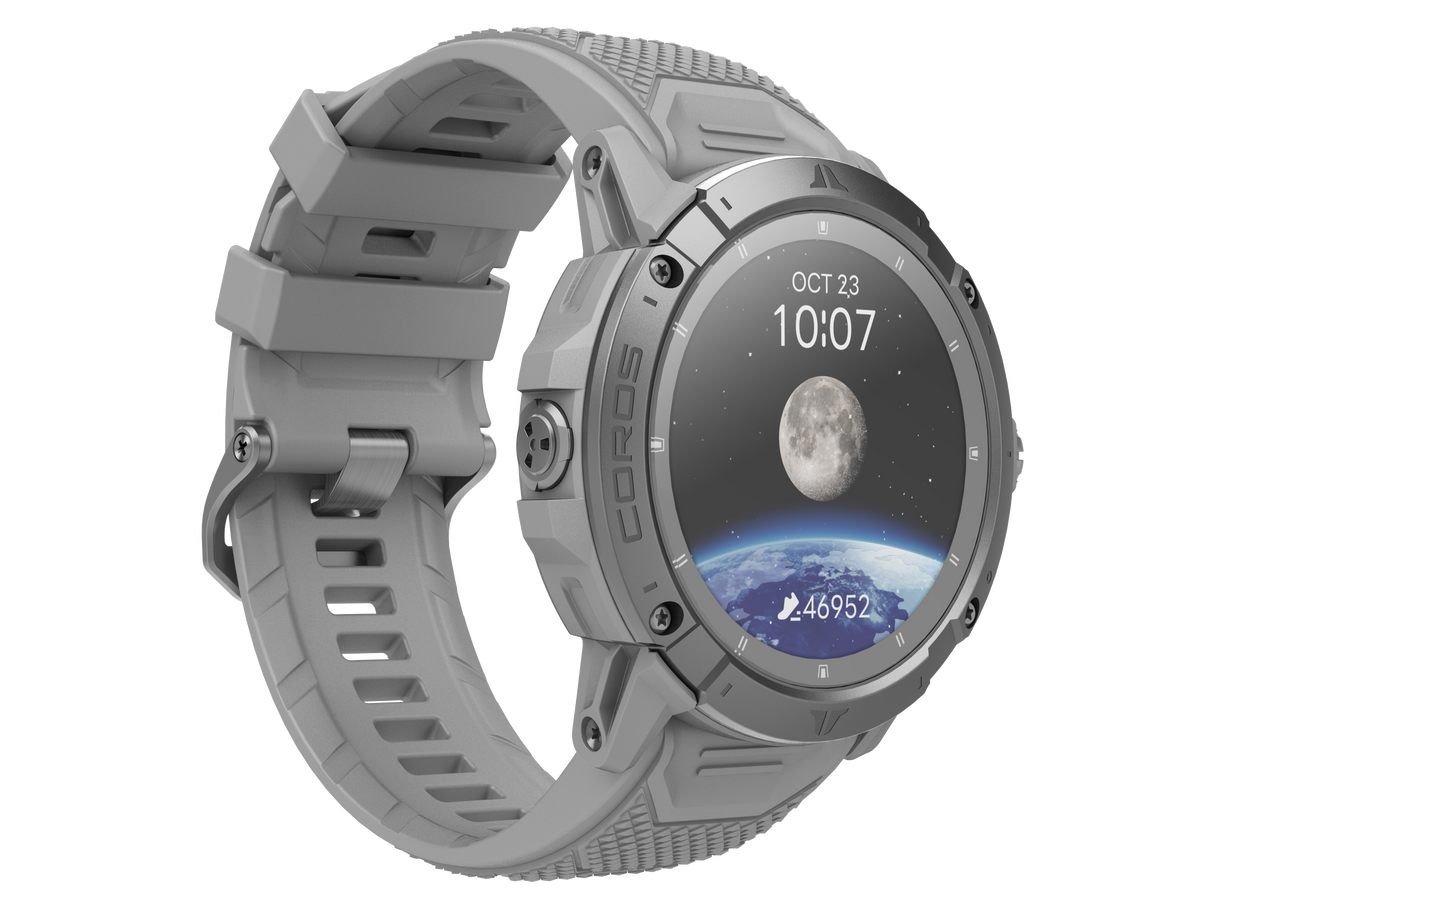 COROS - VERTIX 2S GPS Adventure Watch - Moon (Grey)